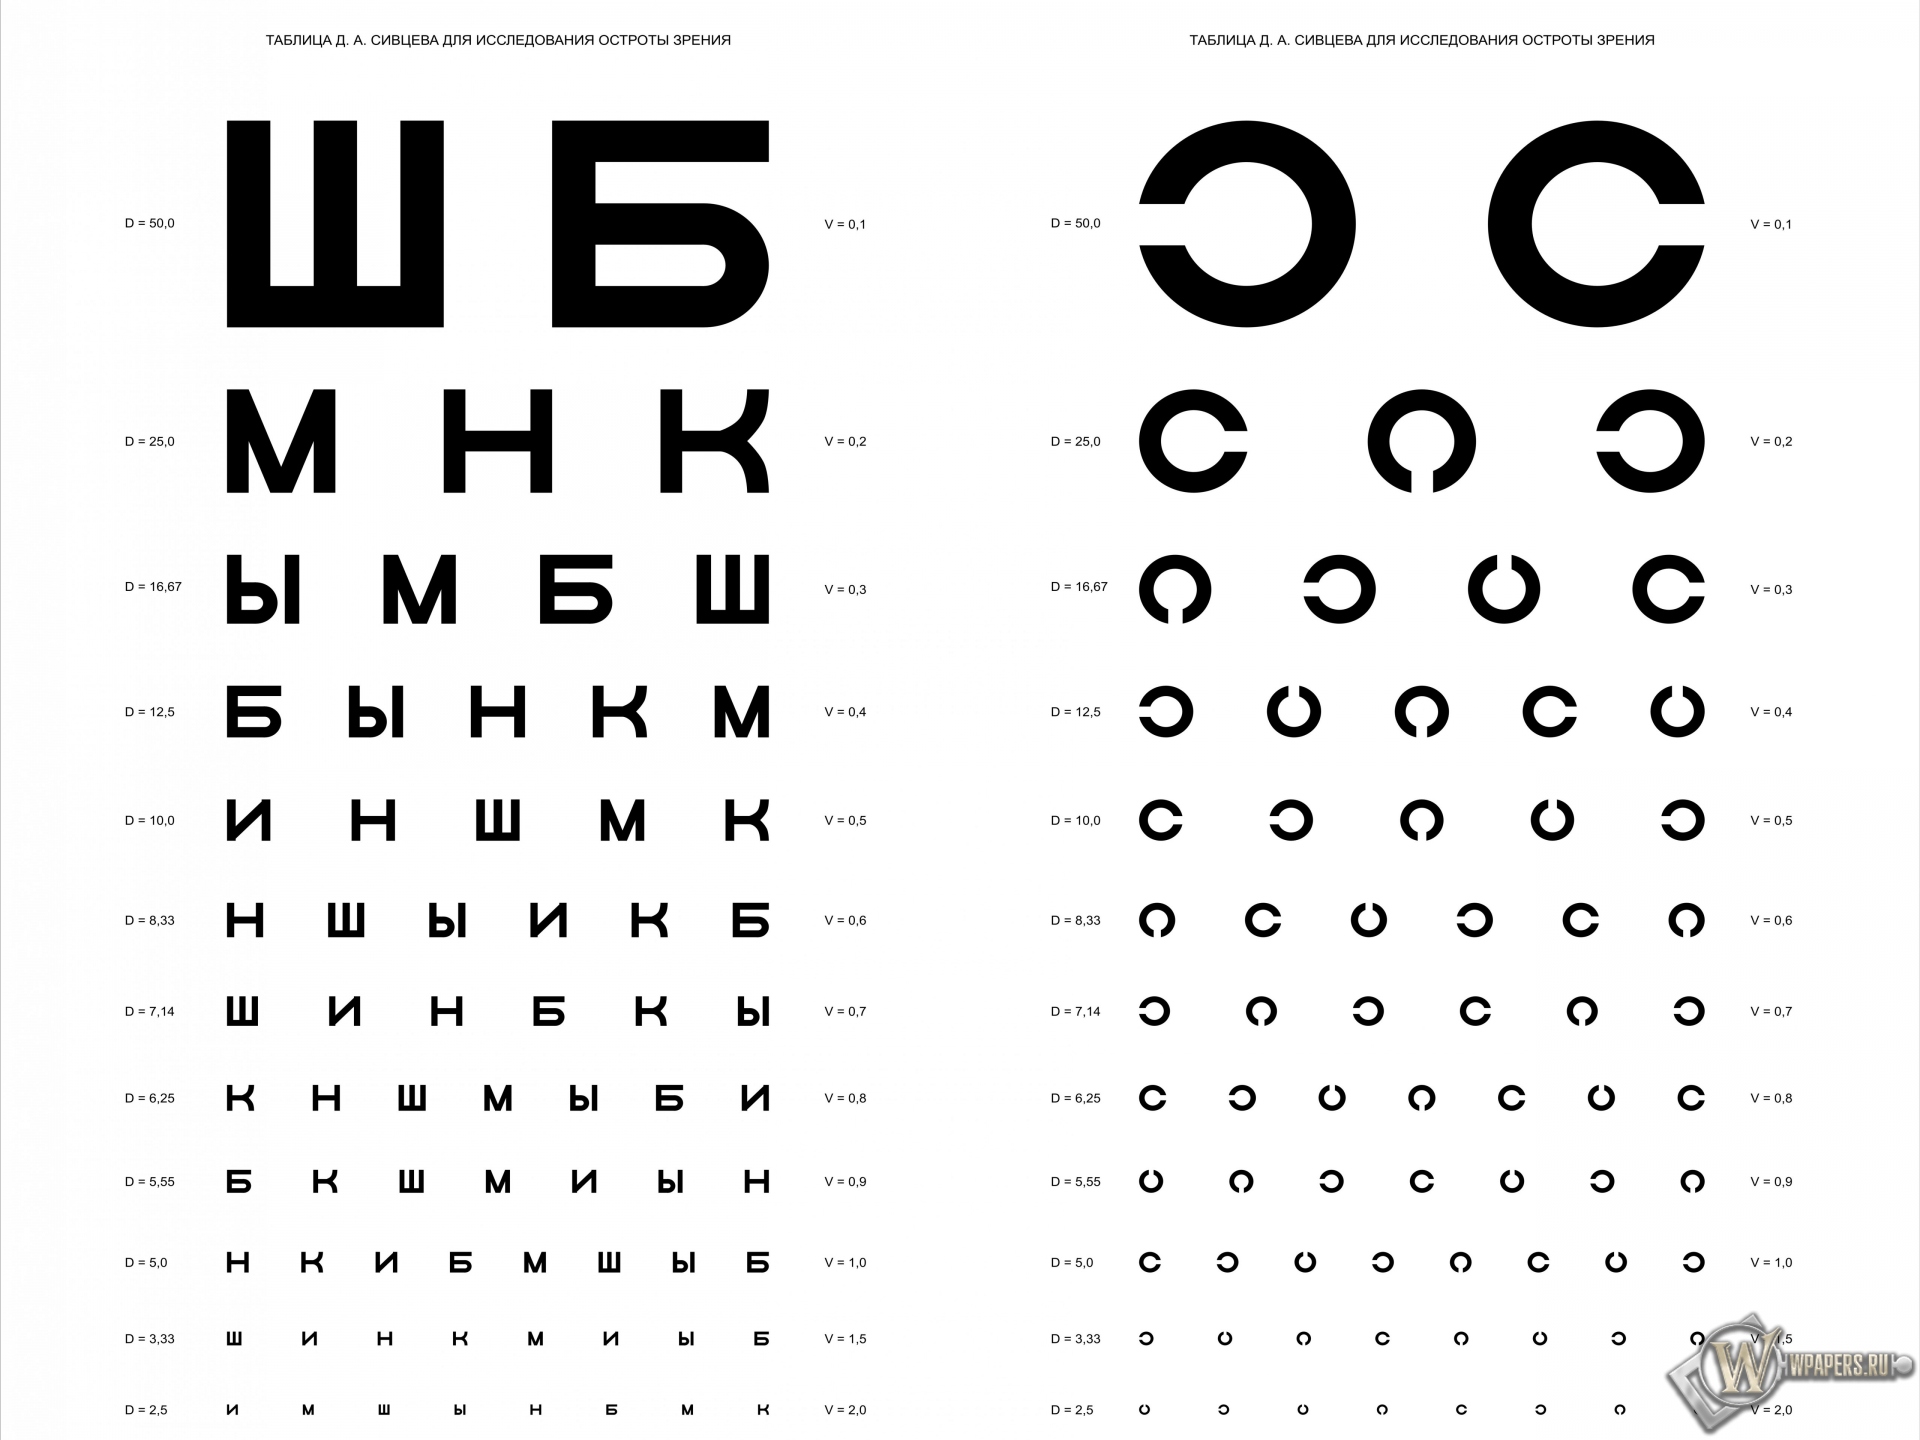 Таблица Д.А. Сивцева для проверки зрения 1920x1440